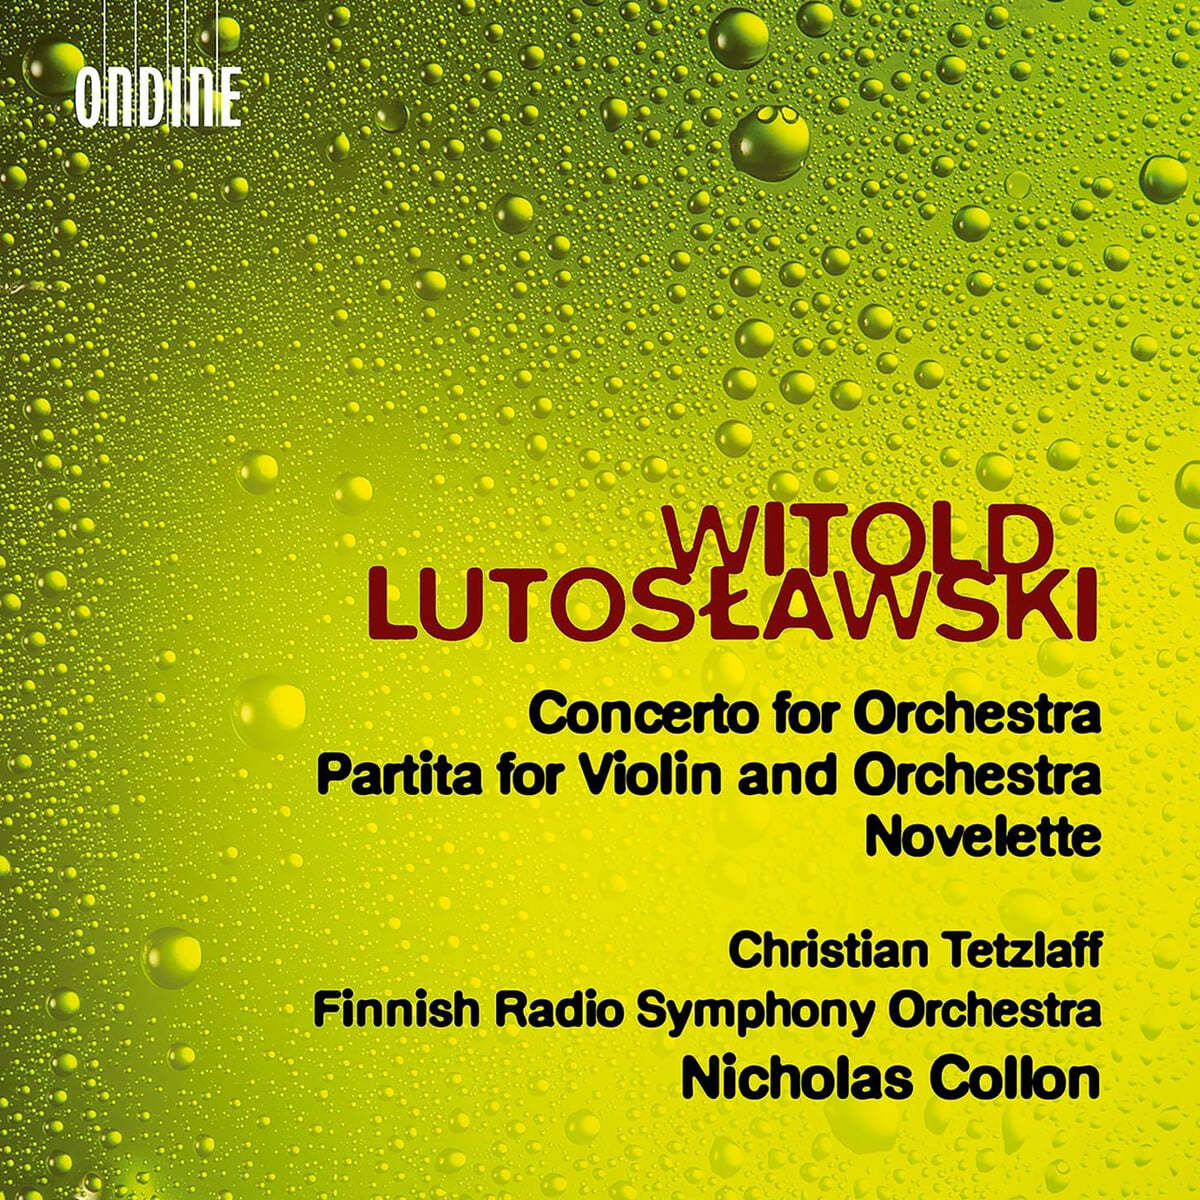 Christian Tetzlaff 루토스와프스키: 관현악을 위한 협주곡, 파르티타, 노벨레테 (Lutoslawski: Concerto for Orchestra, Partita for Violin and Orchestra & Novelette)